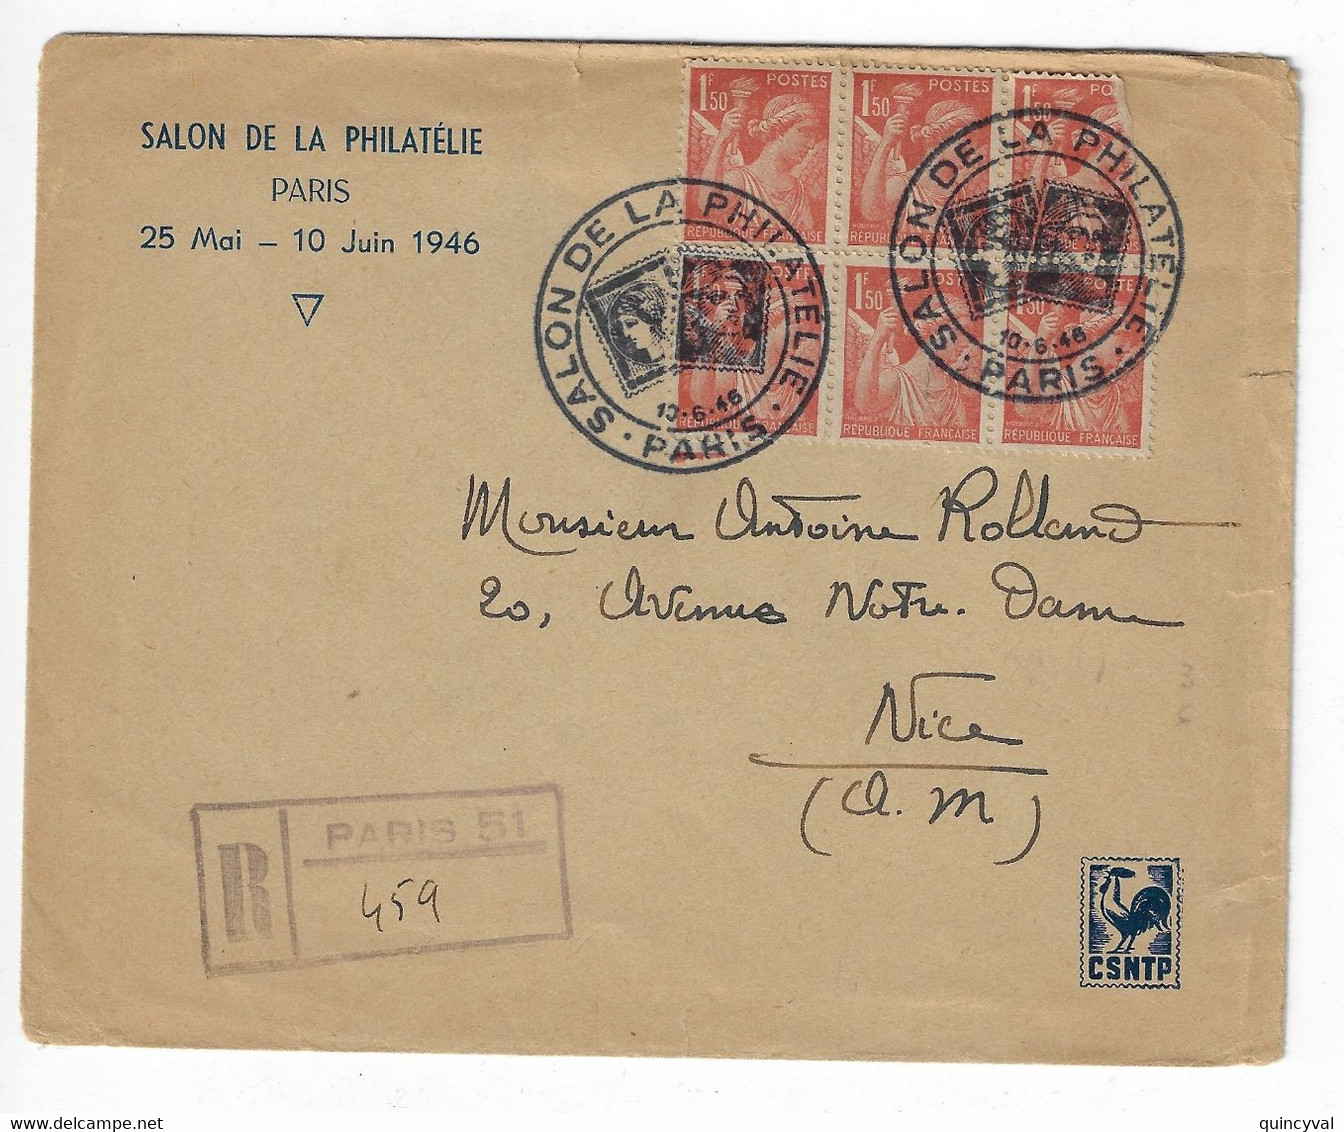 PARIS SALON DE LA PHILATELIE CSNTP 1946 Lettre Recommandée Grille Pas Etiquette Bureau Temporaire 1,50 F Iris Yv 652 - Cachets Commémoratifs